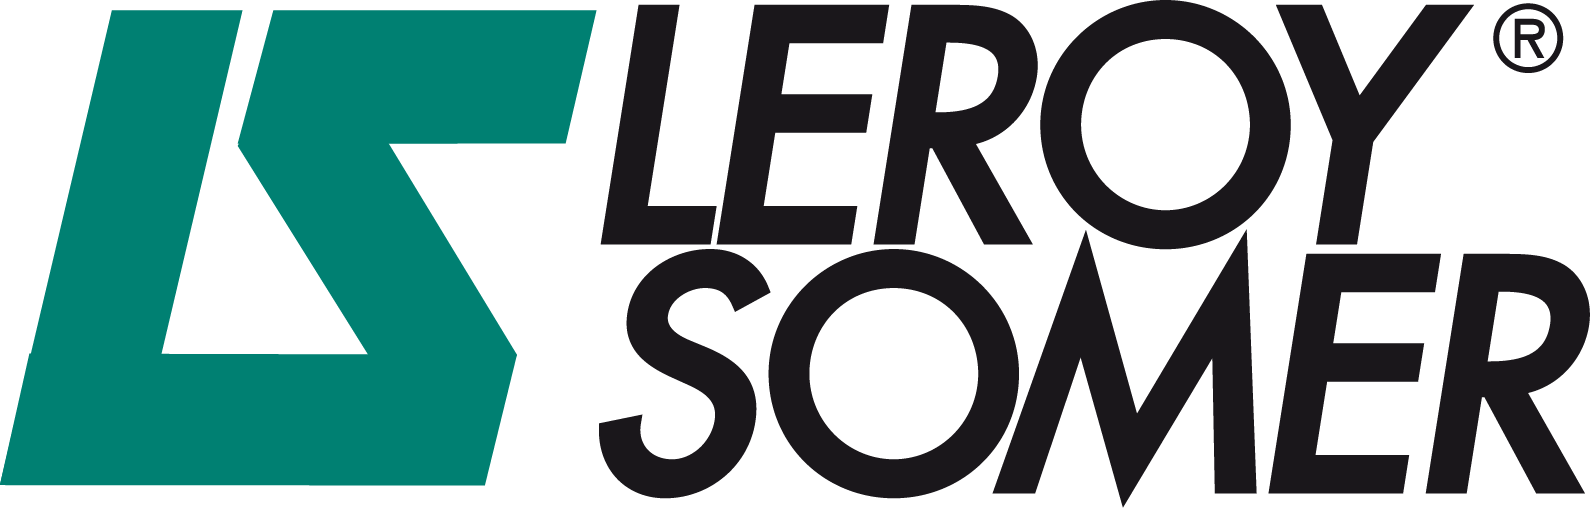 Leroy Somer Logo.png